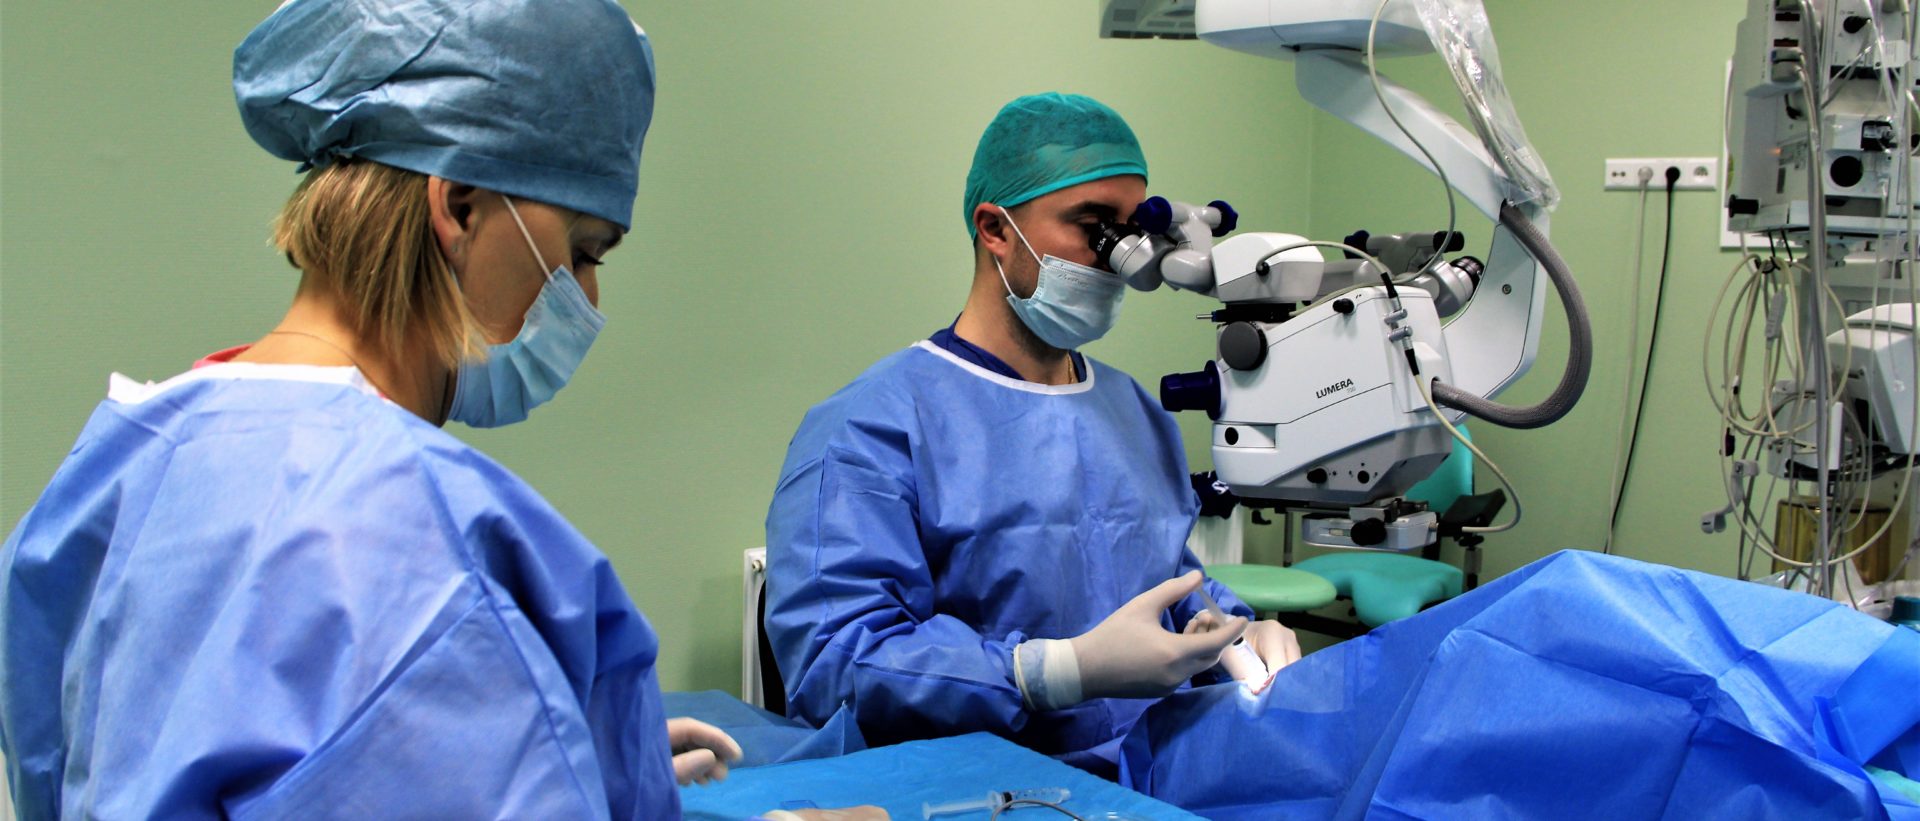 Chirurgia okulistyczna: najczęstsze pytania i odpowiedzi (FAQ)